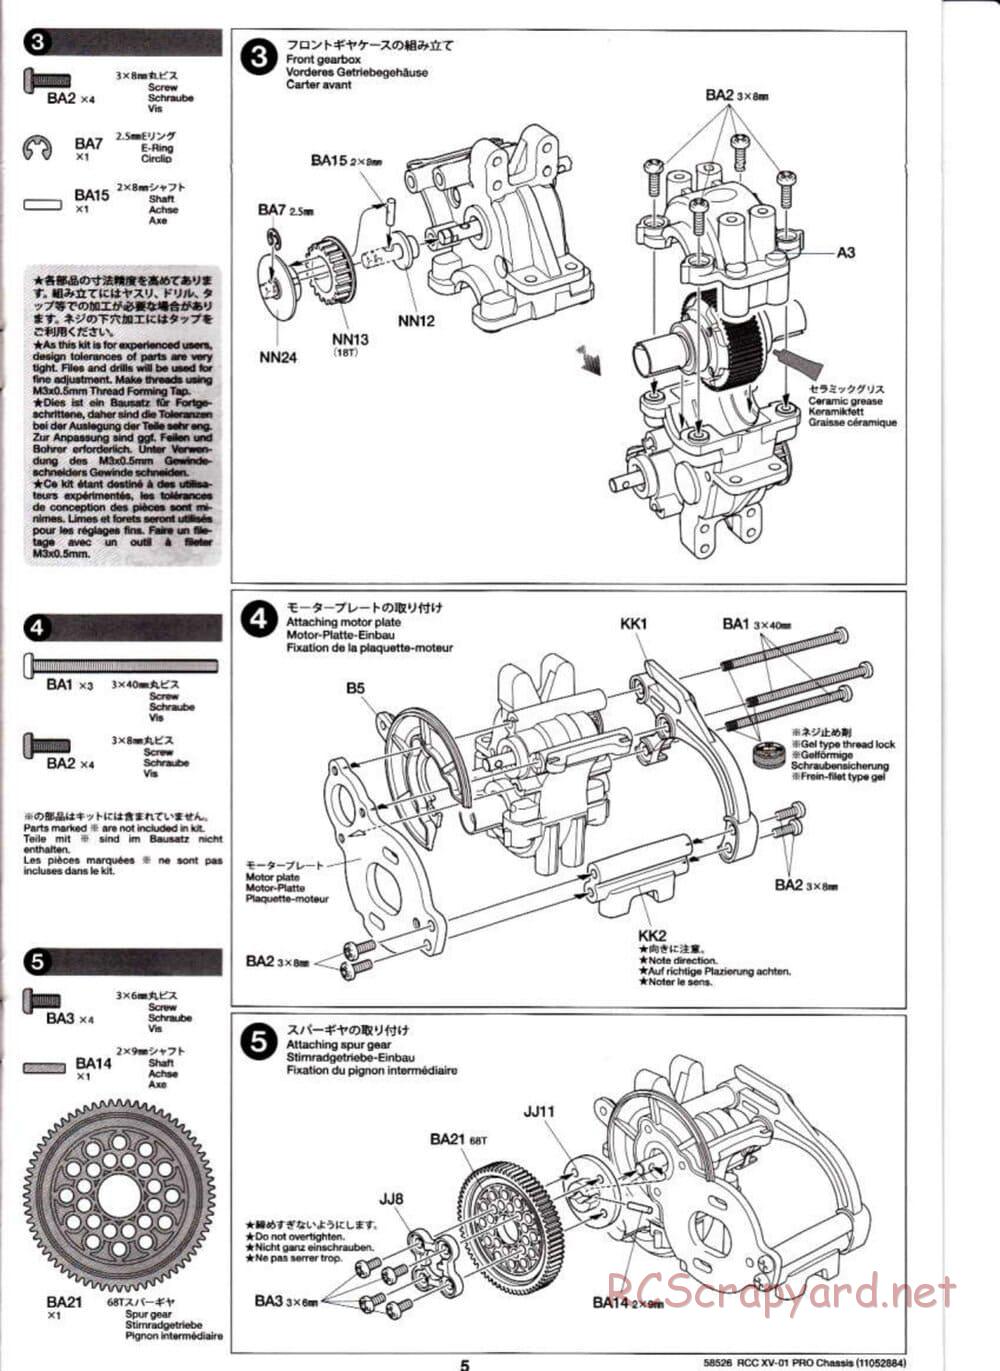 Tamiya - XV-01 PRO Chassis - Manual - Page 5